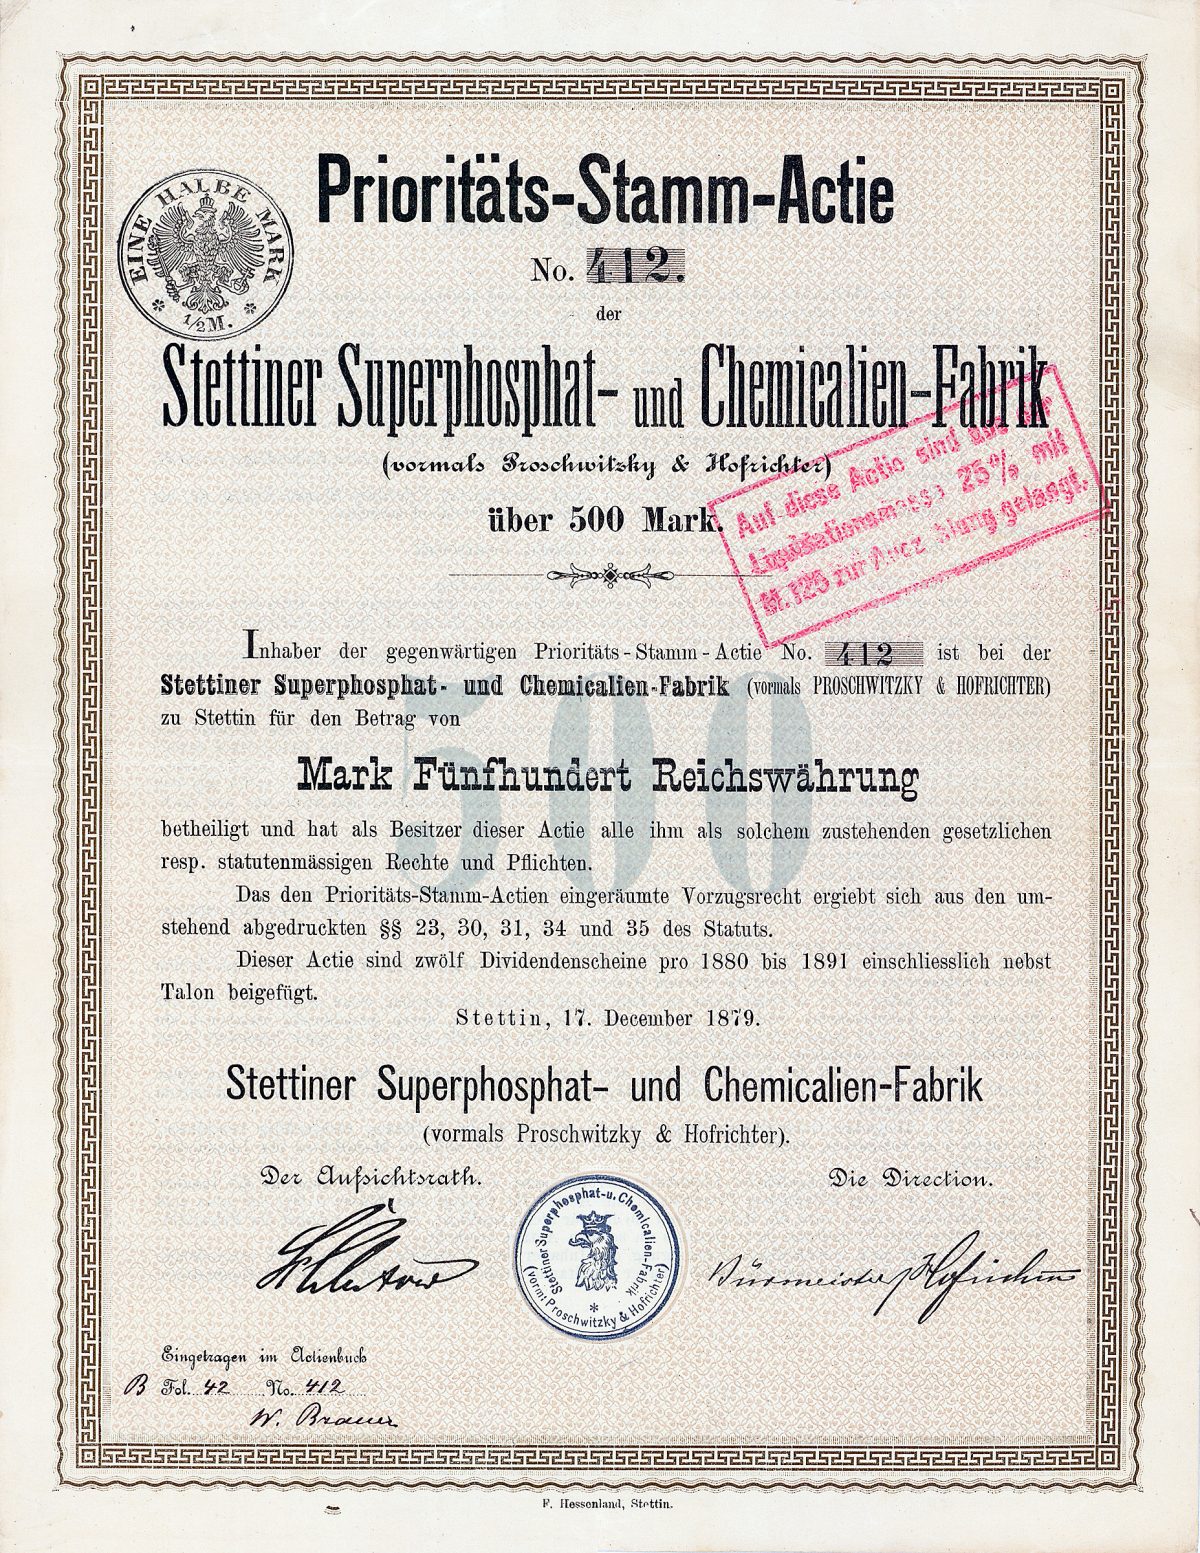 Stettiner Superphosphat- und Chemicalien-Fabrik, Gründeraktie von 1879.